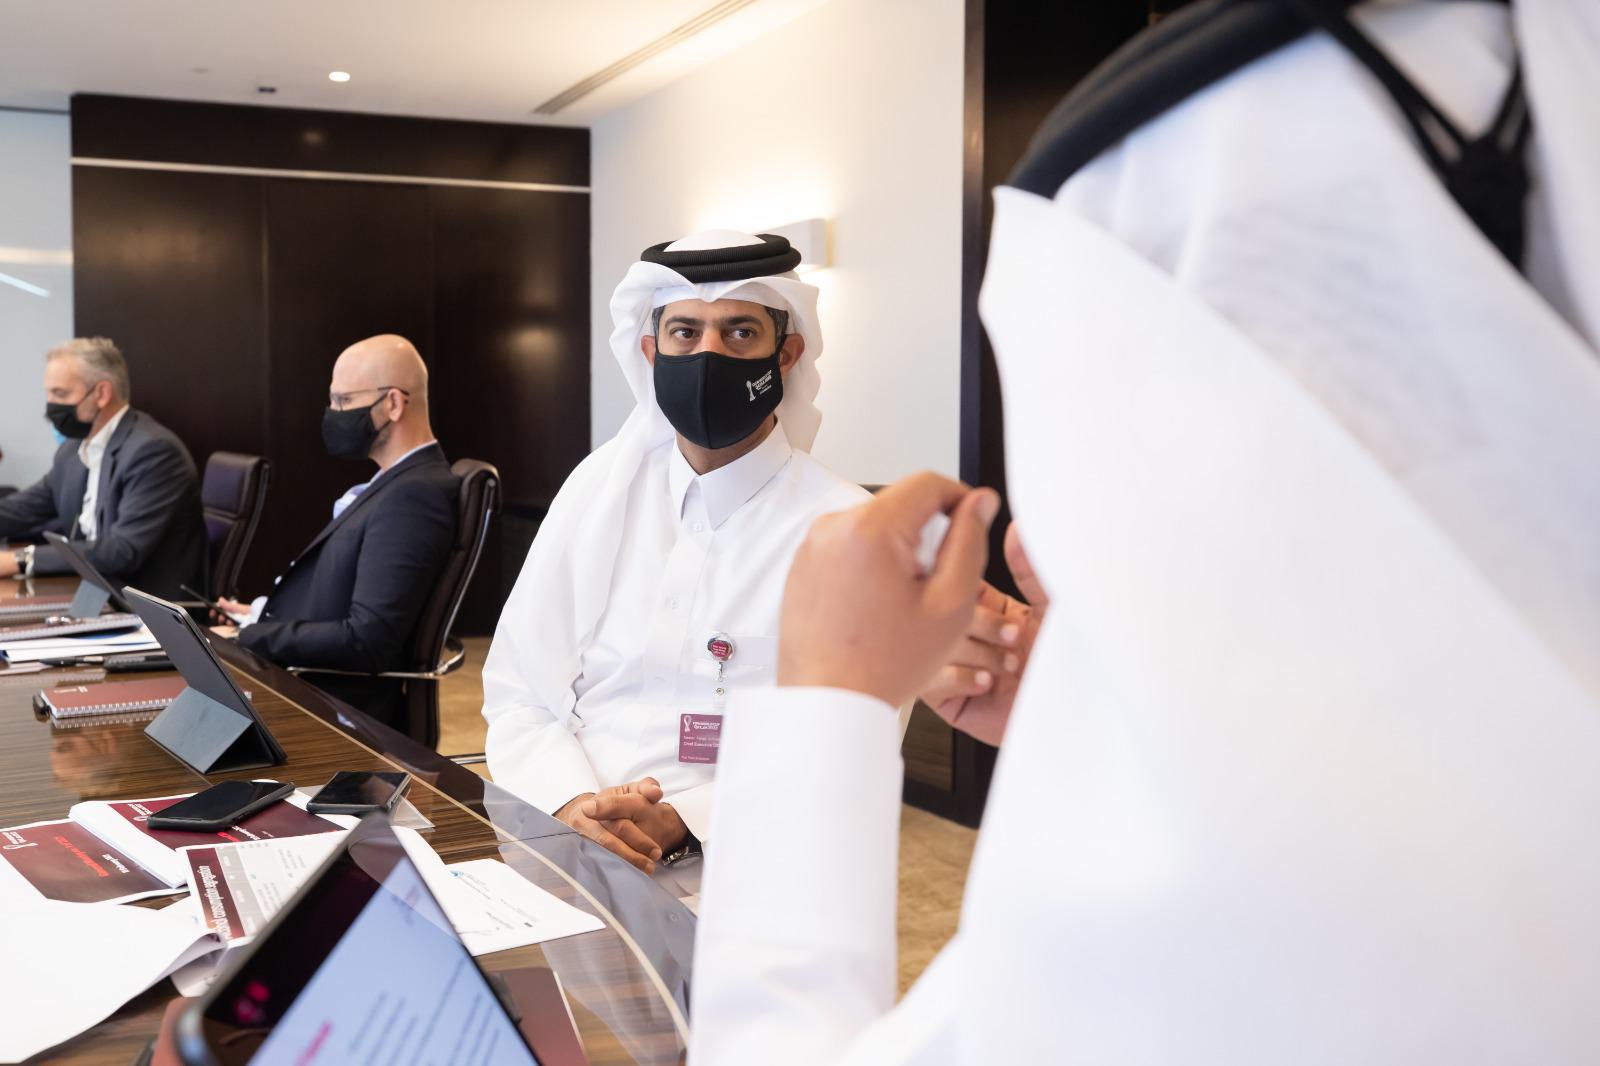 مجلس إدارة بطولة كأس العالم FIFA قطر 2022™ يستعرض أبرز الإنجازات والمحطات الهامة على الطريق نحو المونديال